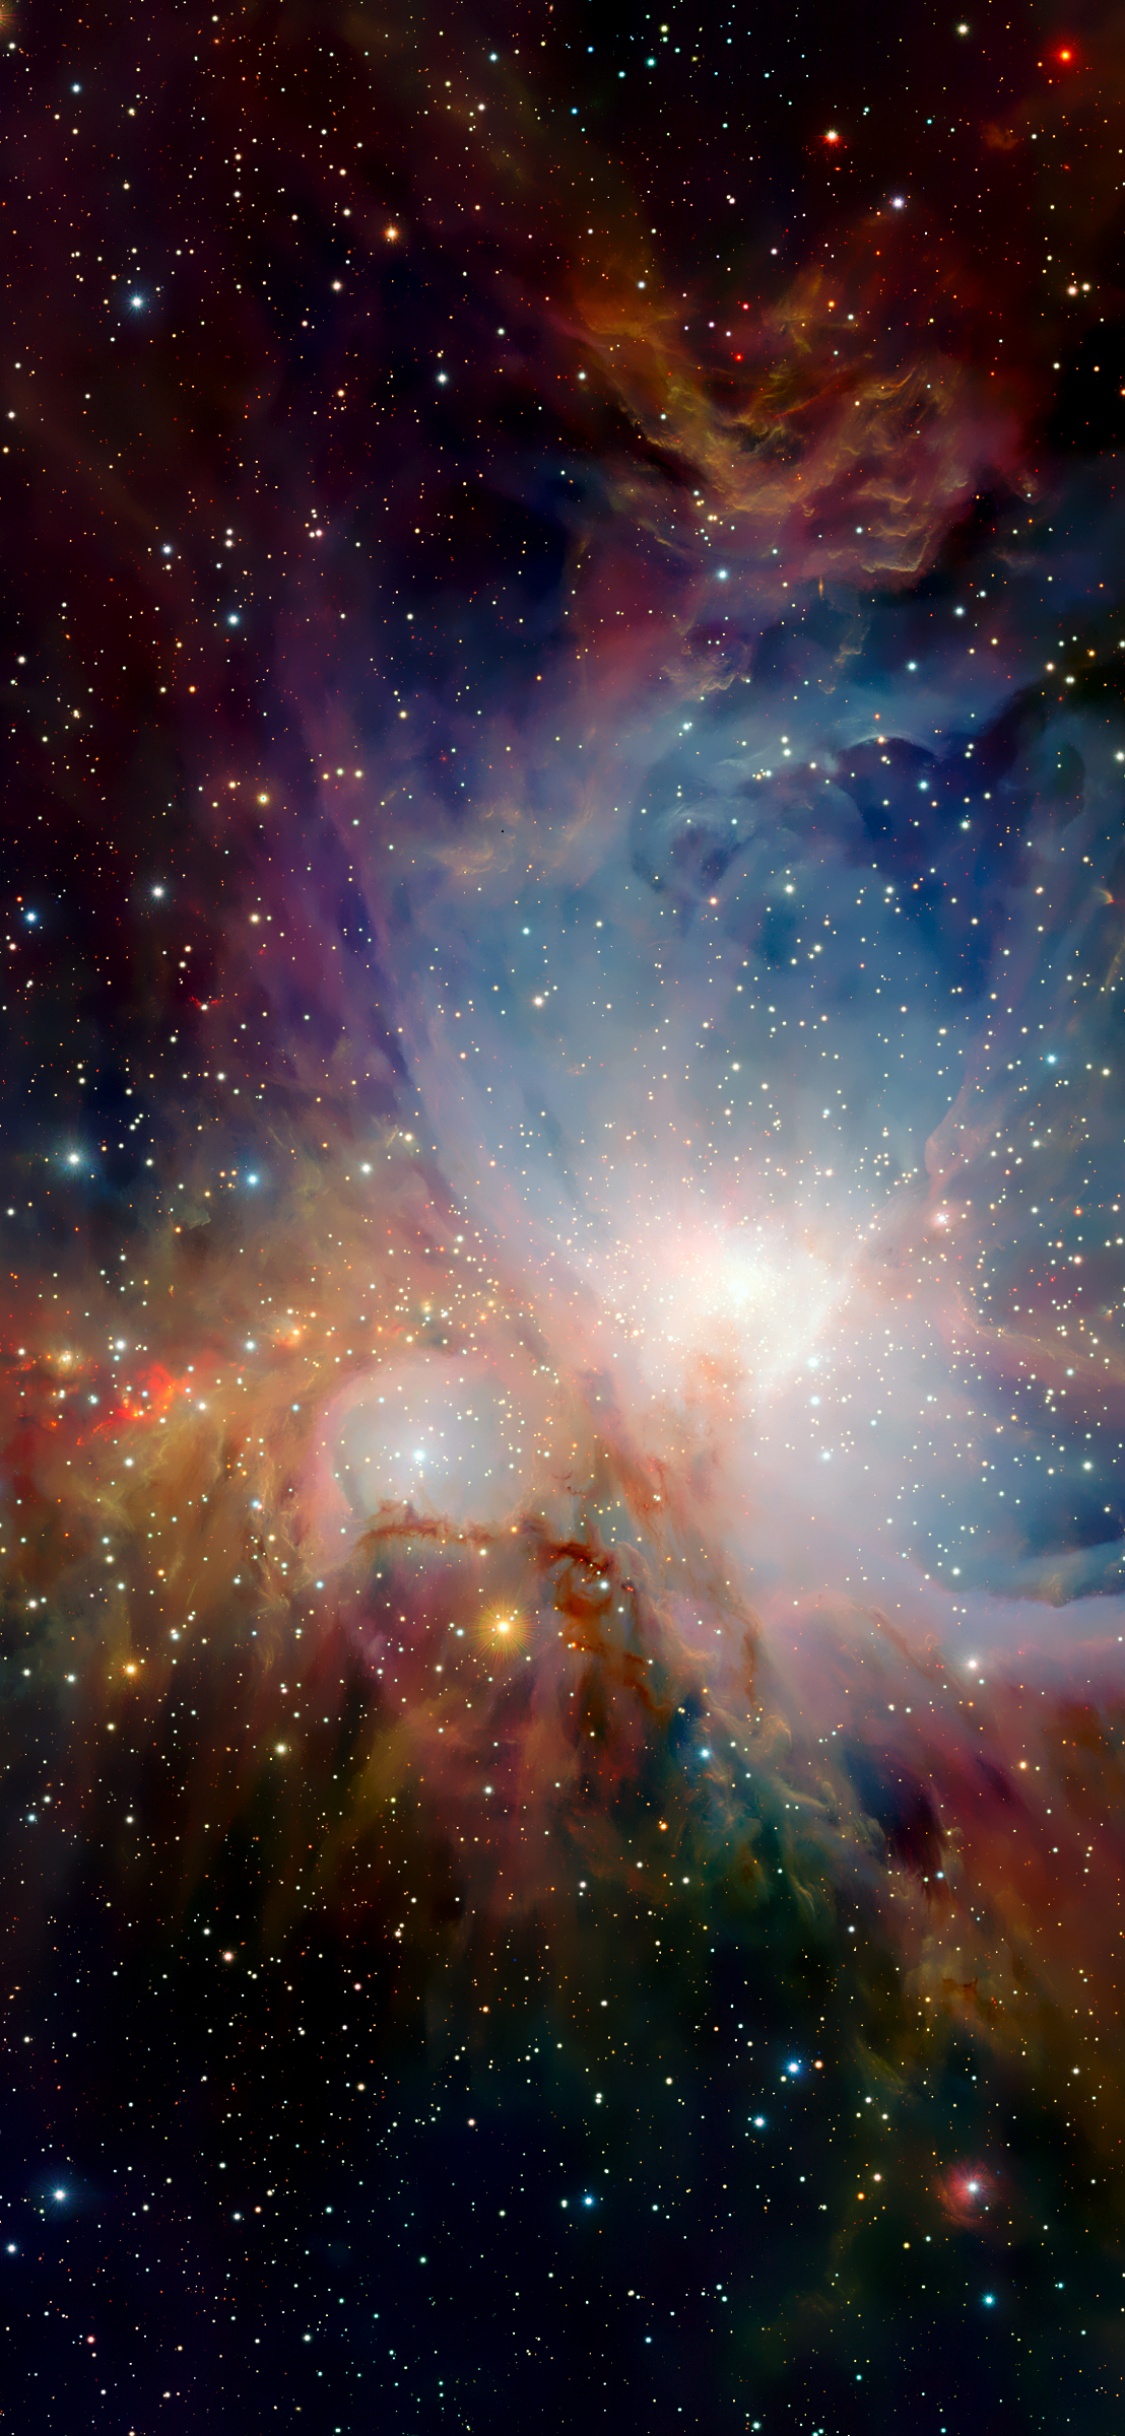 Orion Nebula Wallpaper 4K, Infrared vision, Scientific Observation